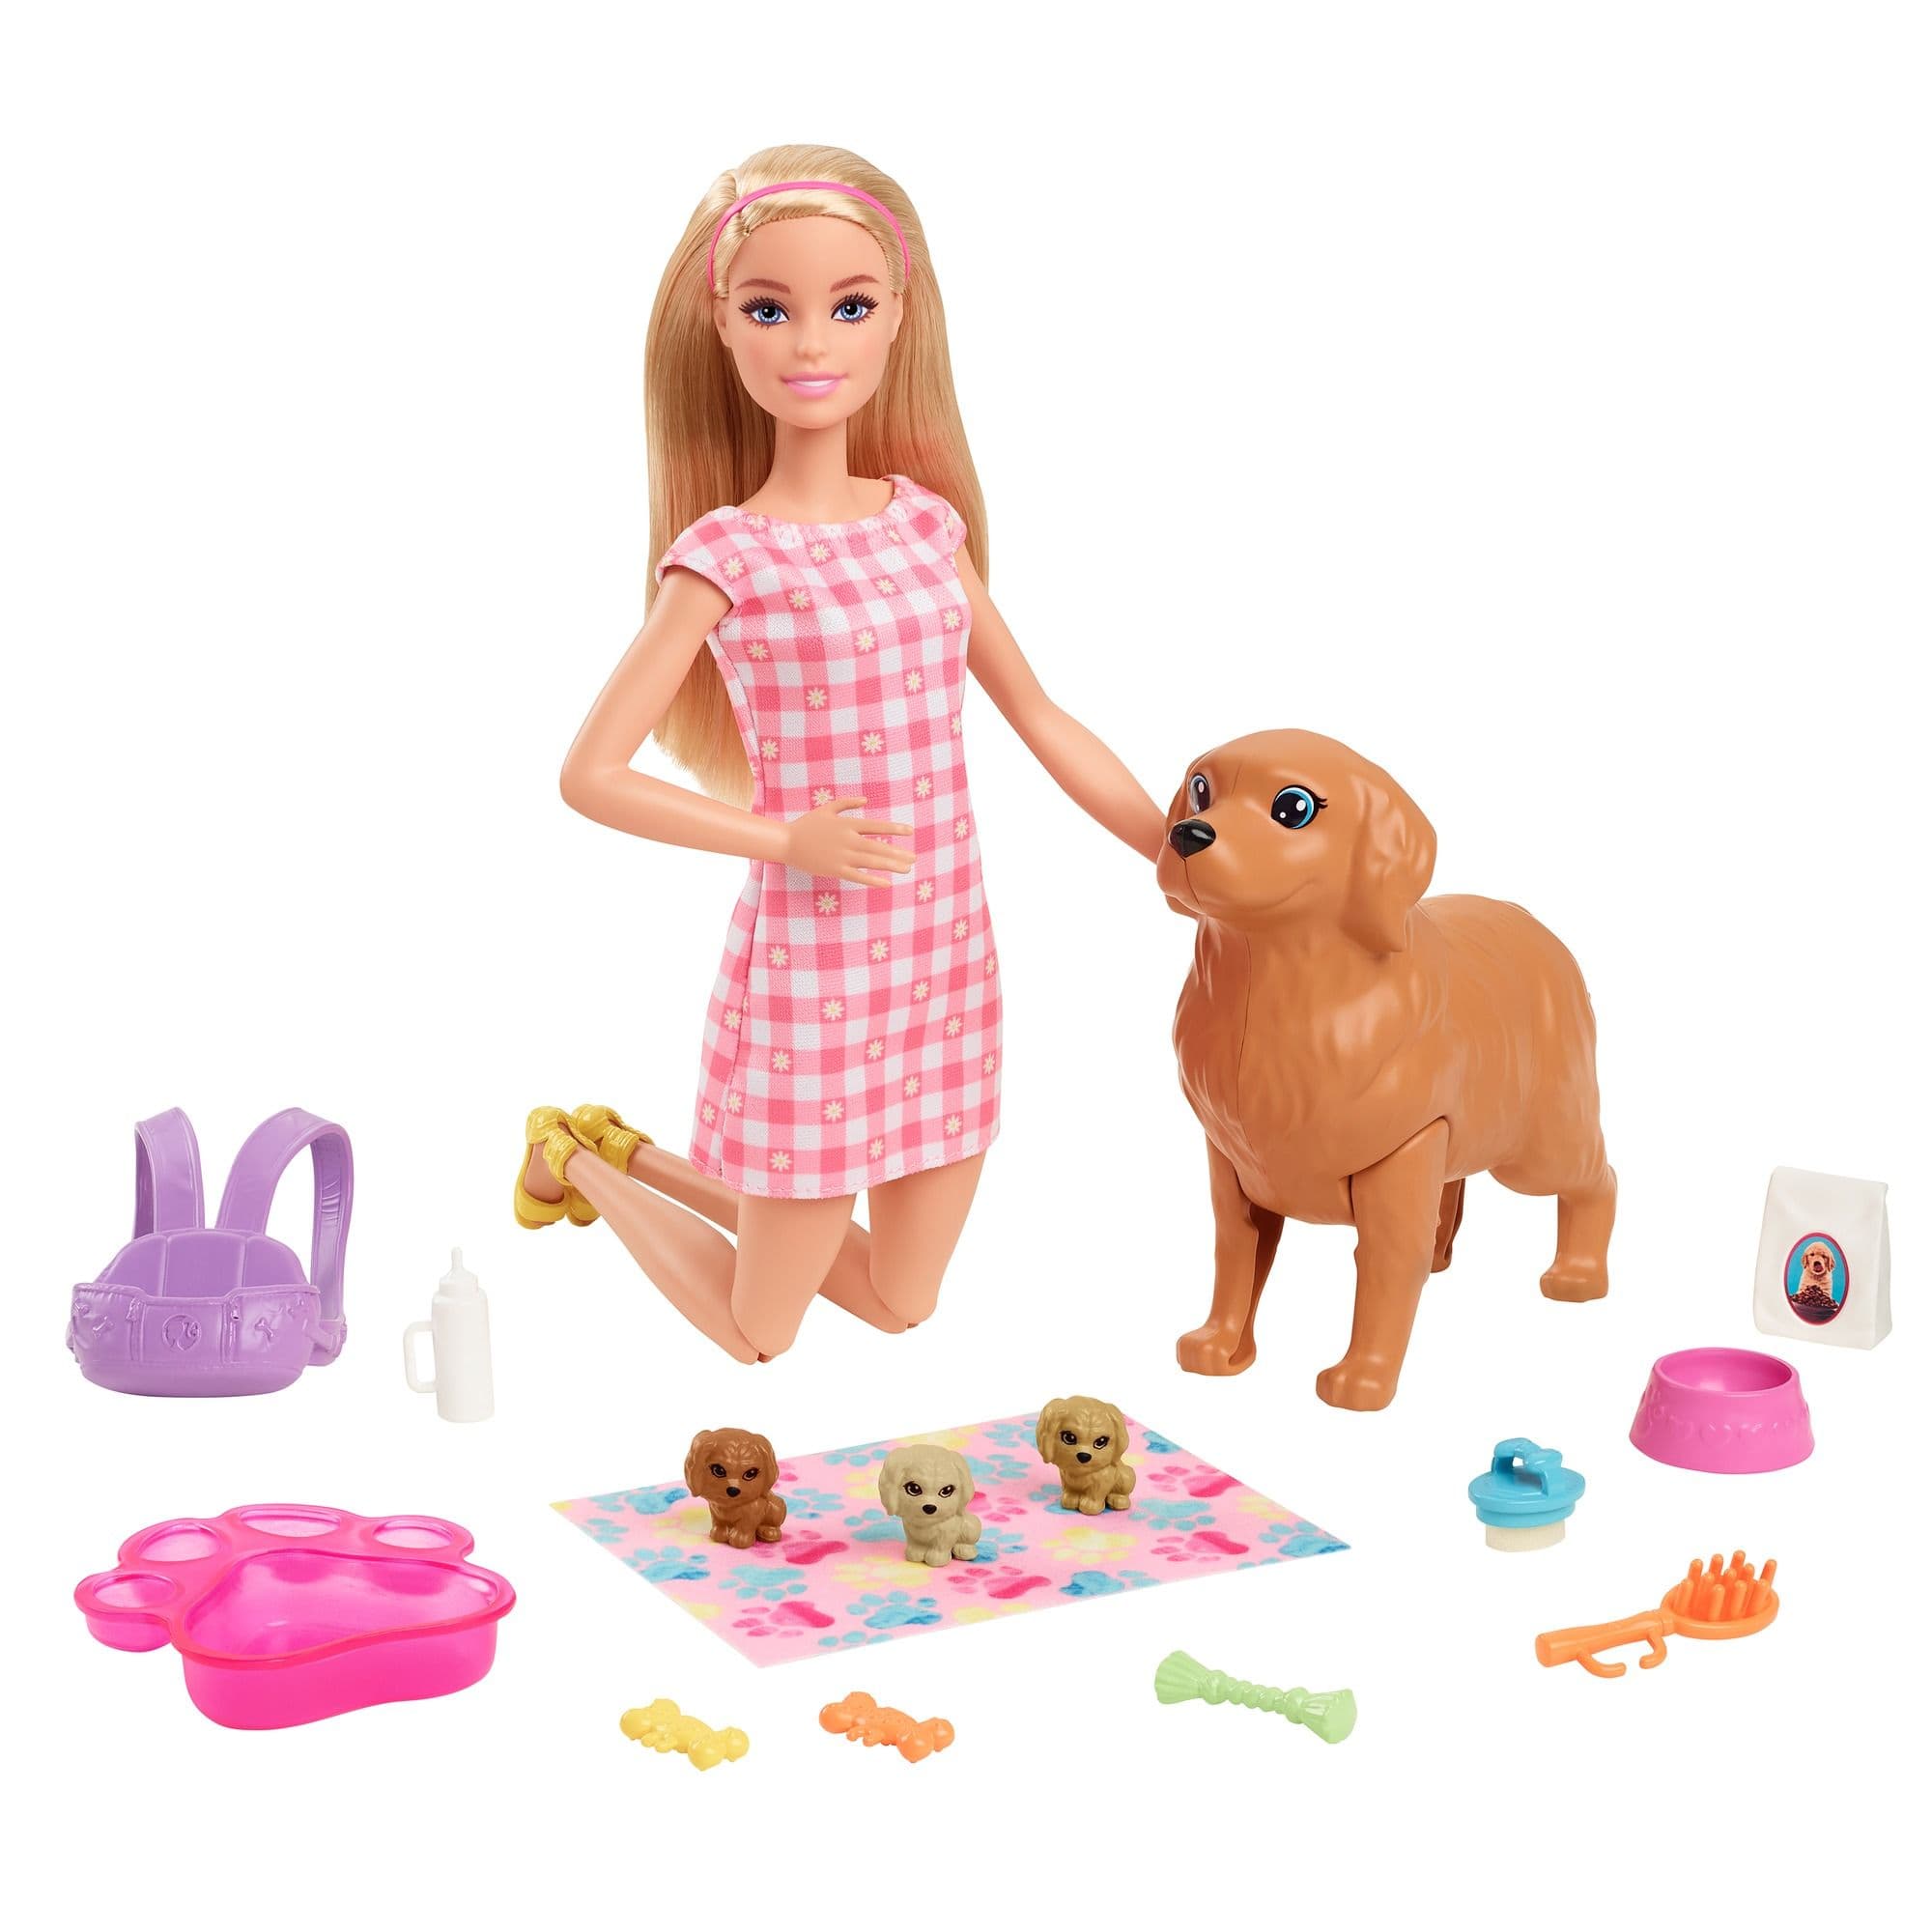 Accessoires Barbie a l'unité - Barbie - Prématuré